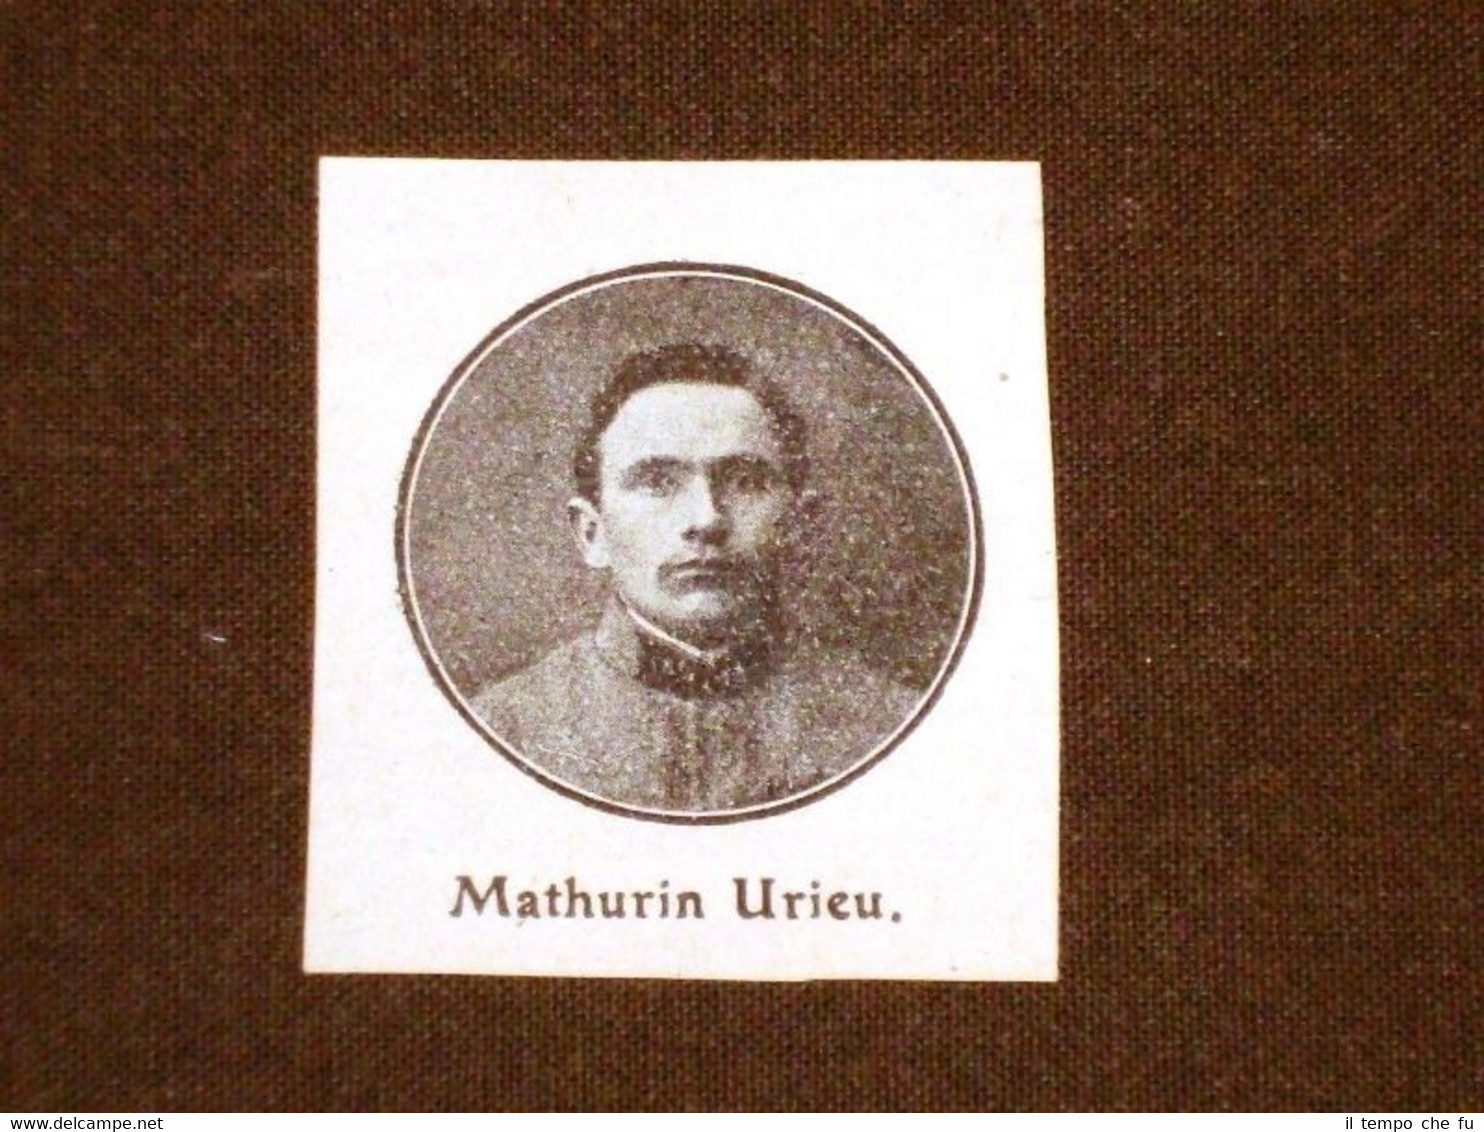 Mathurin Urieu